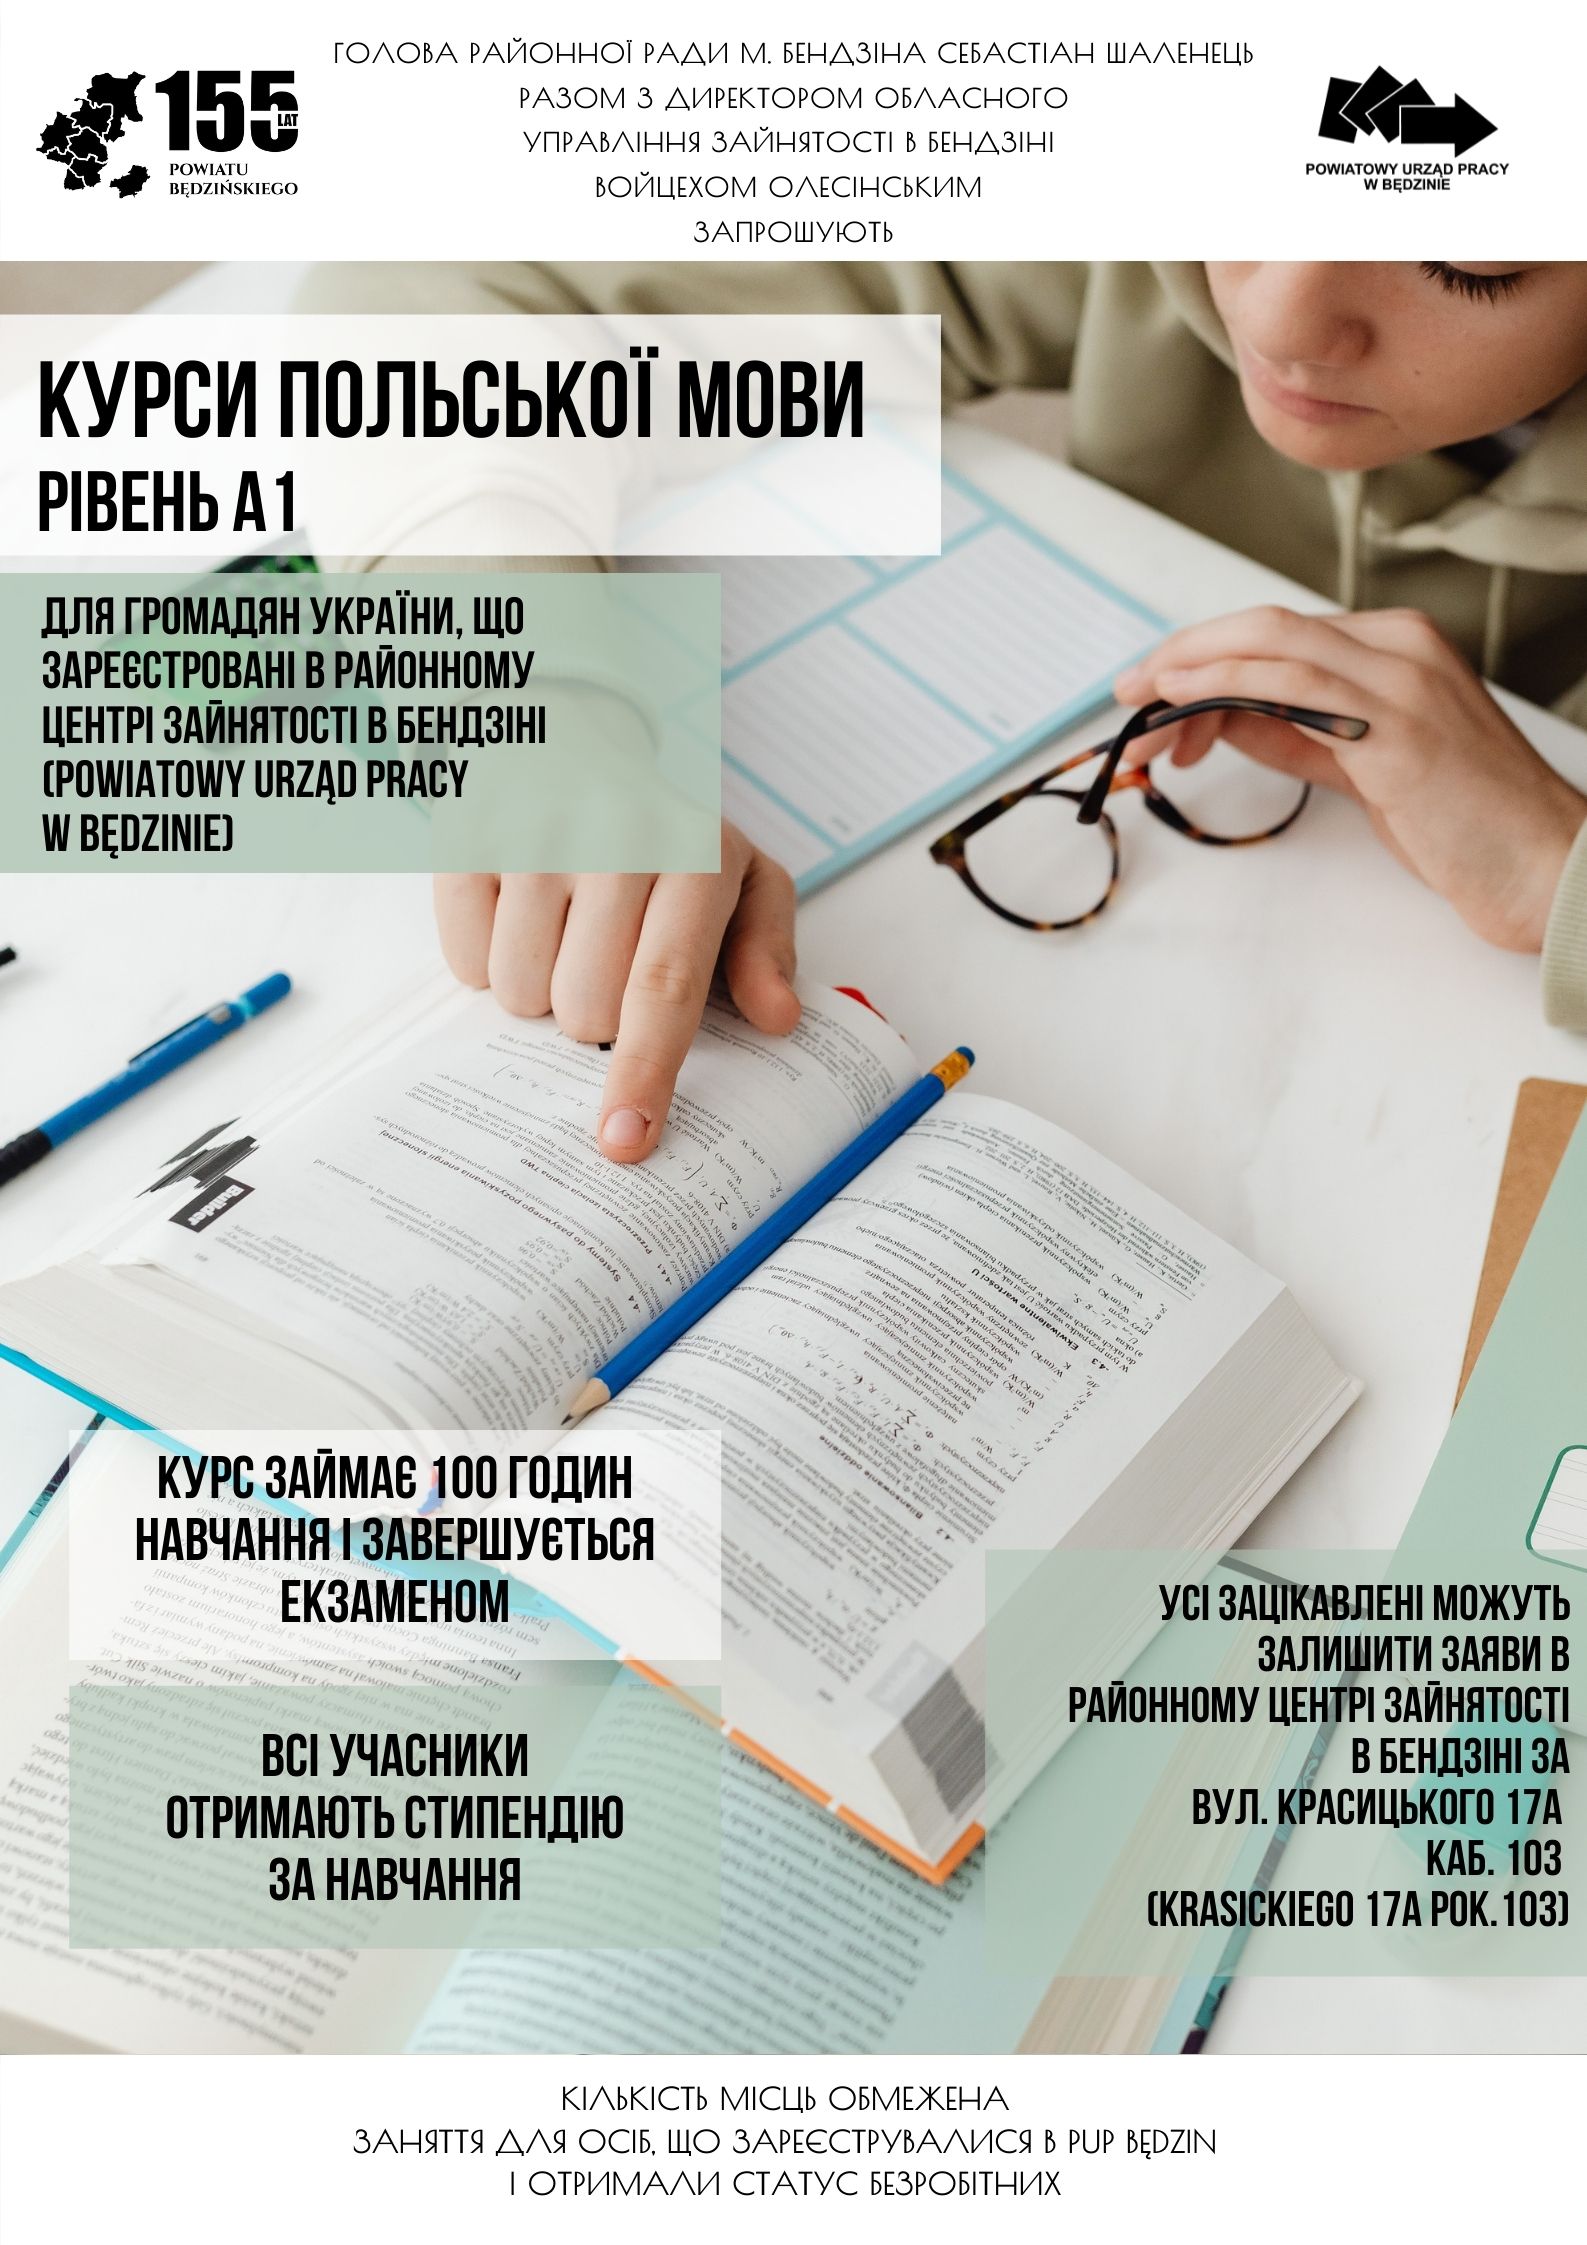 Plakat promujący kurs języka polskiego w języku ukraińskim